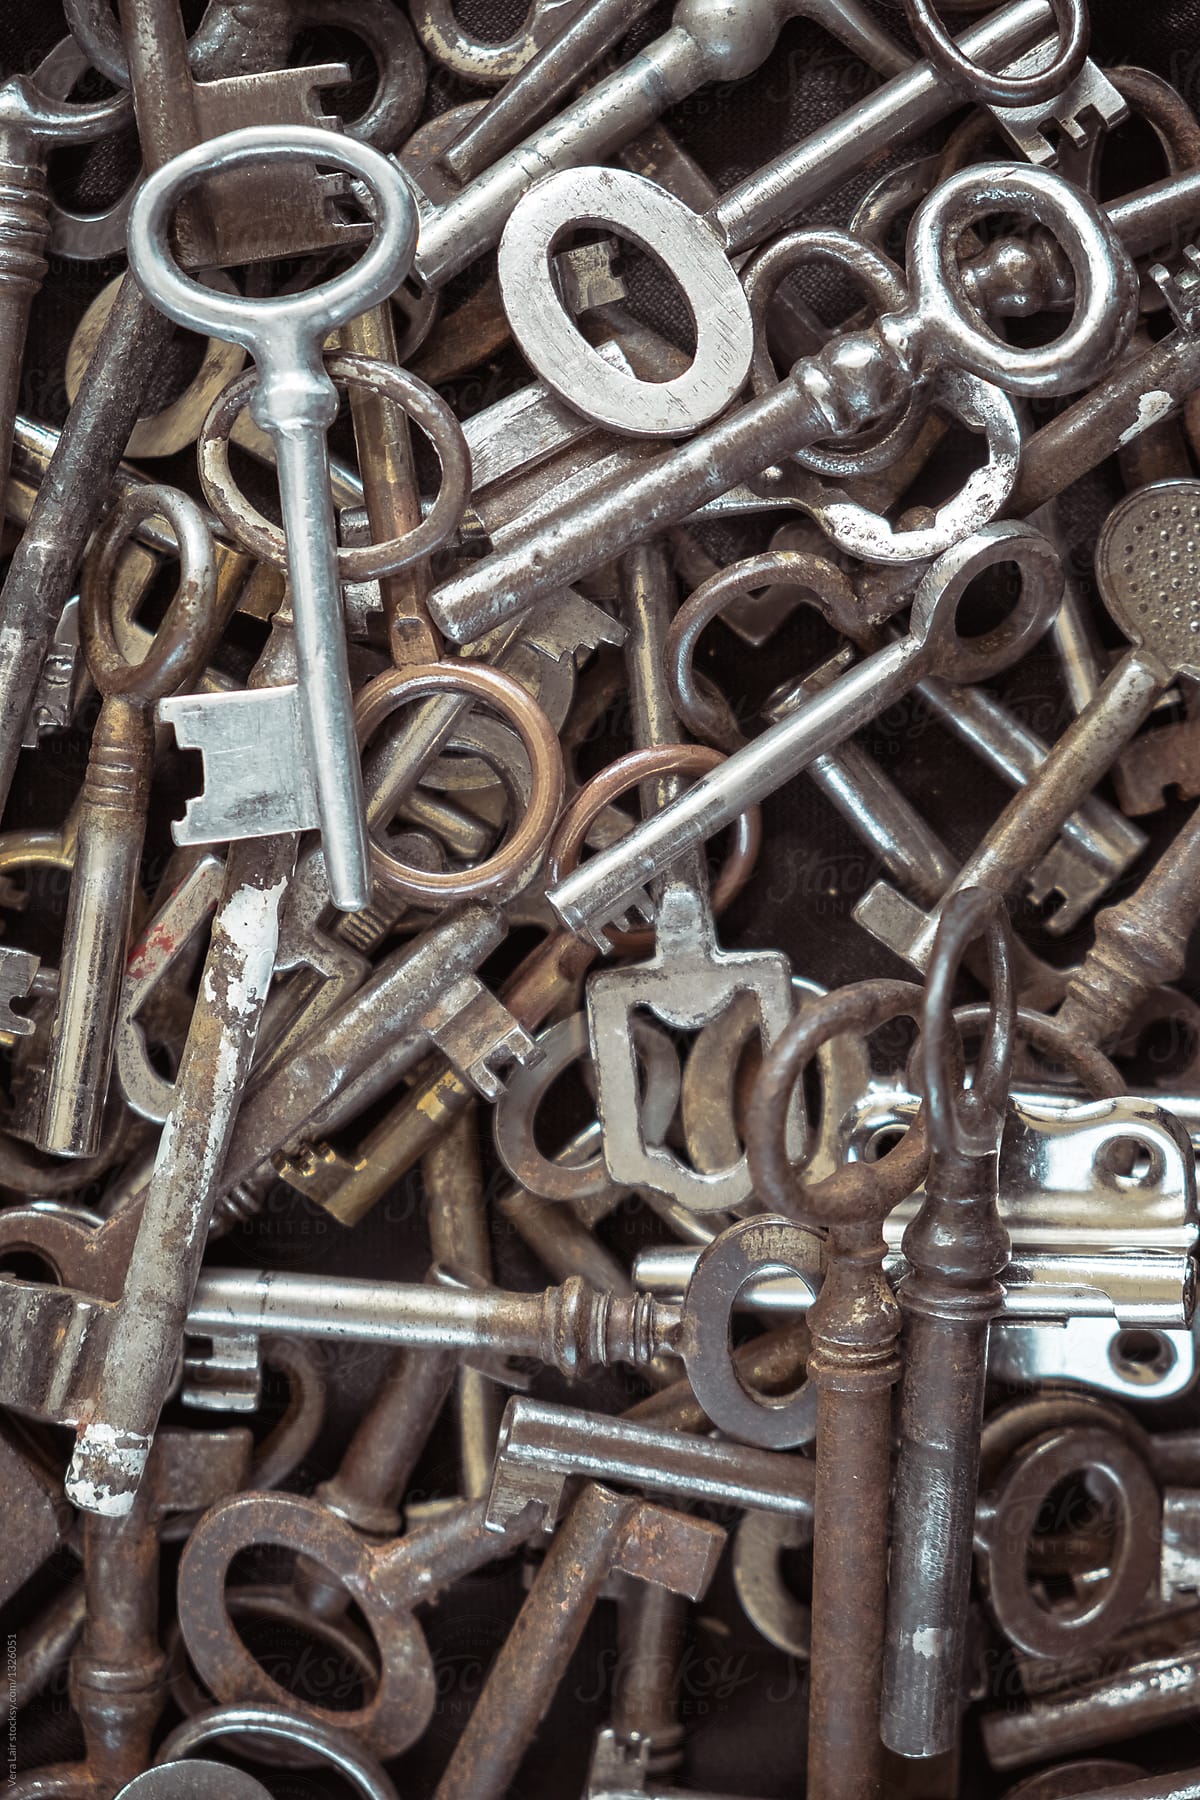 A pile of old  keys